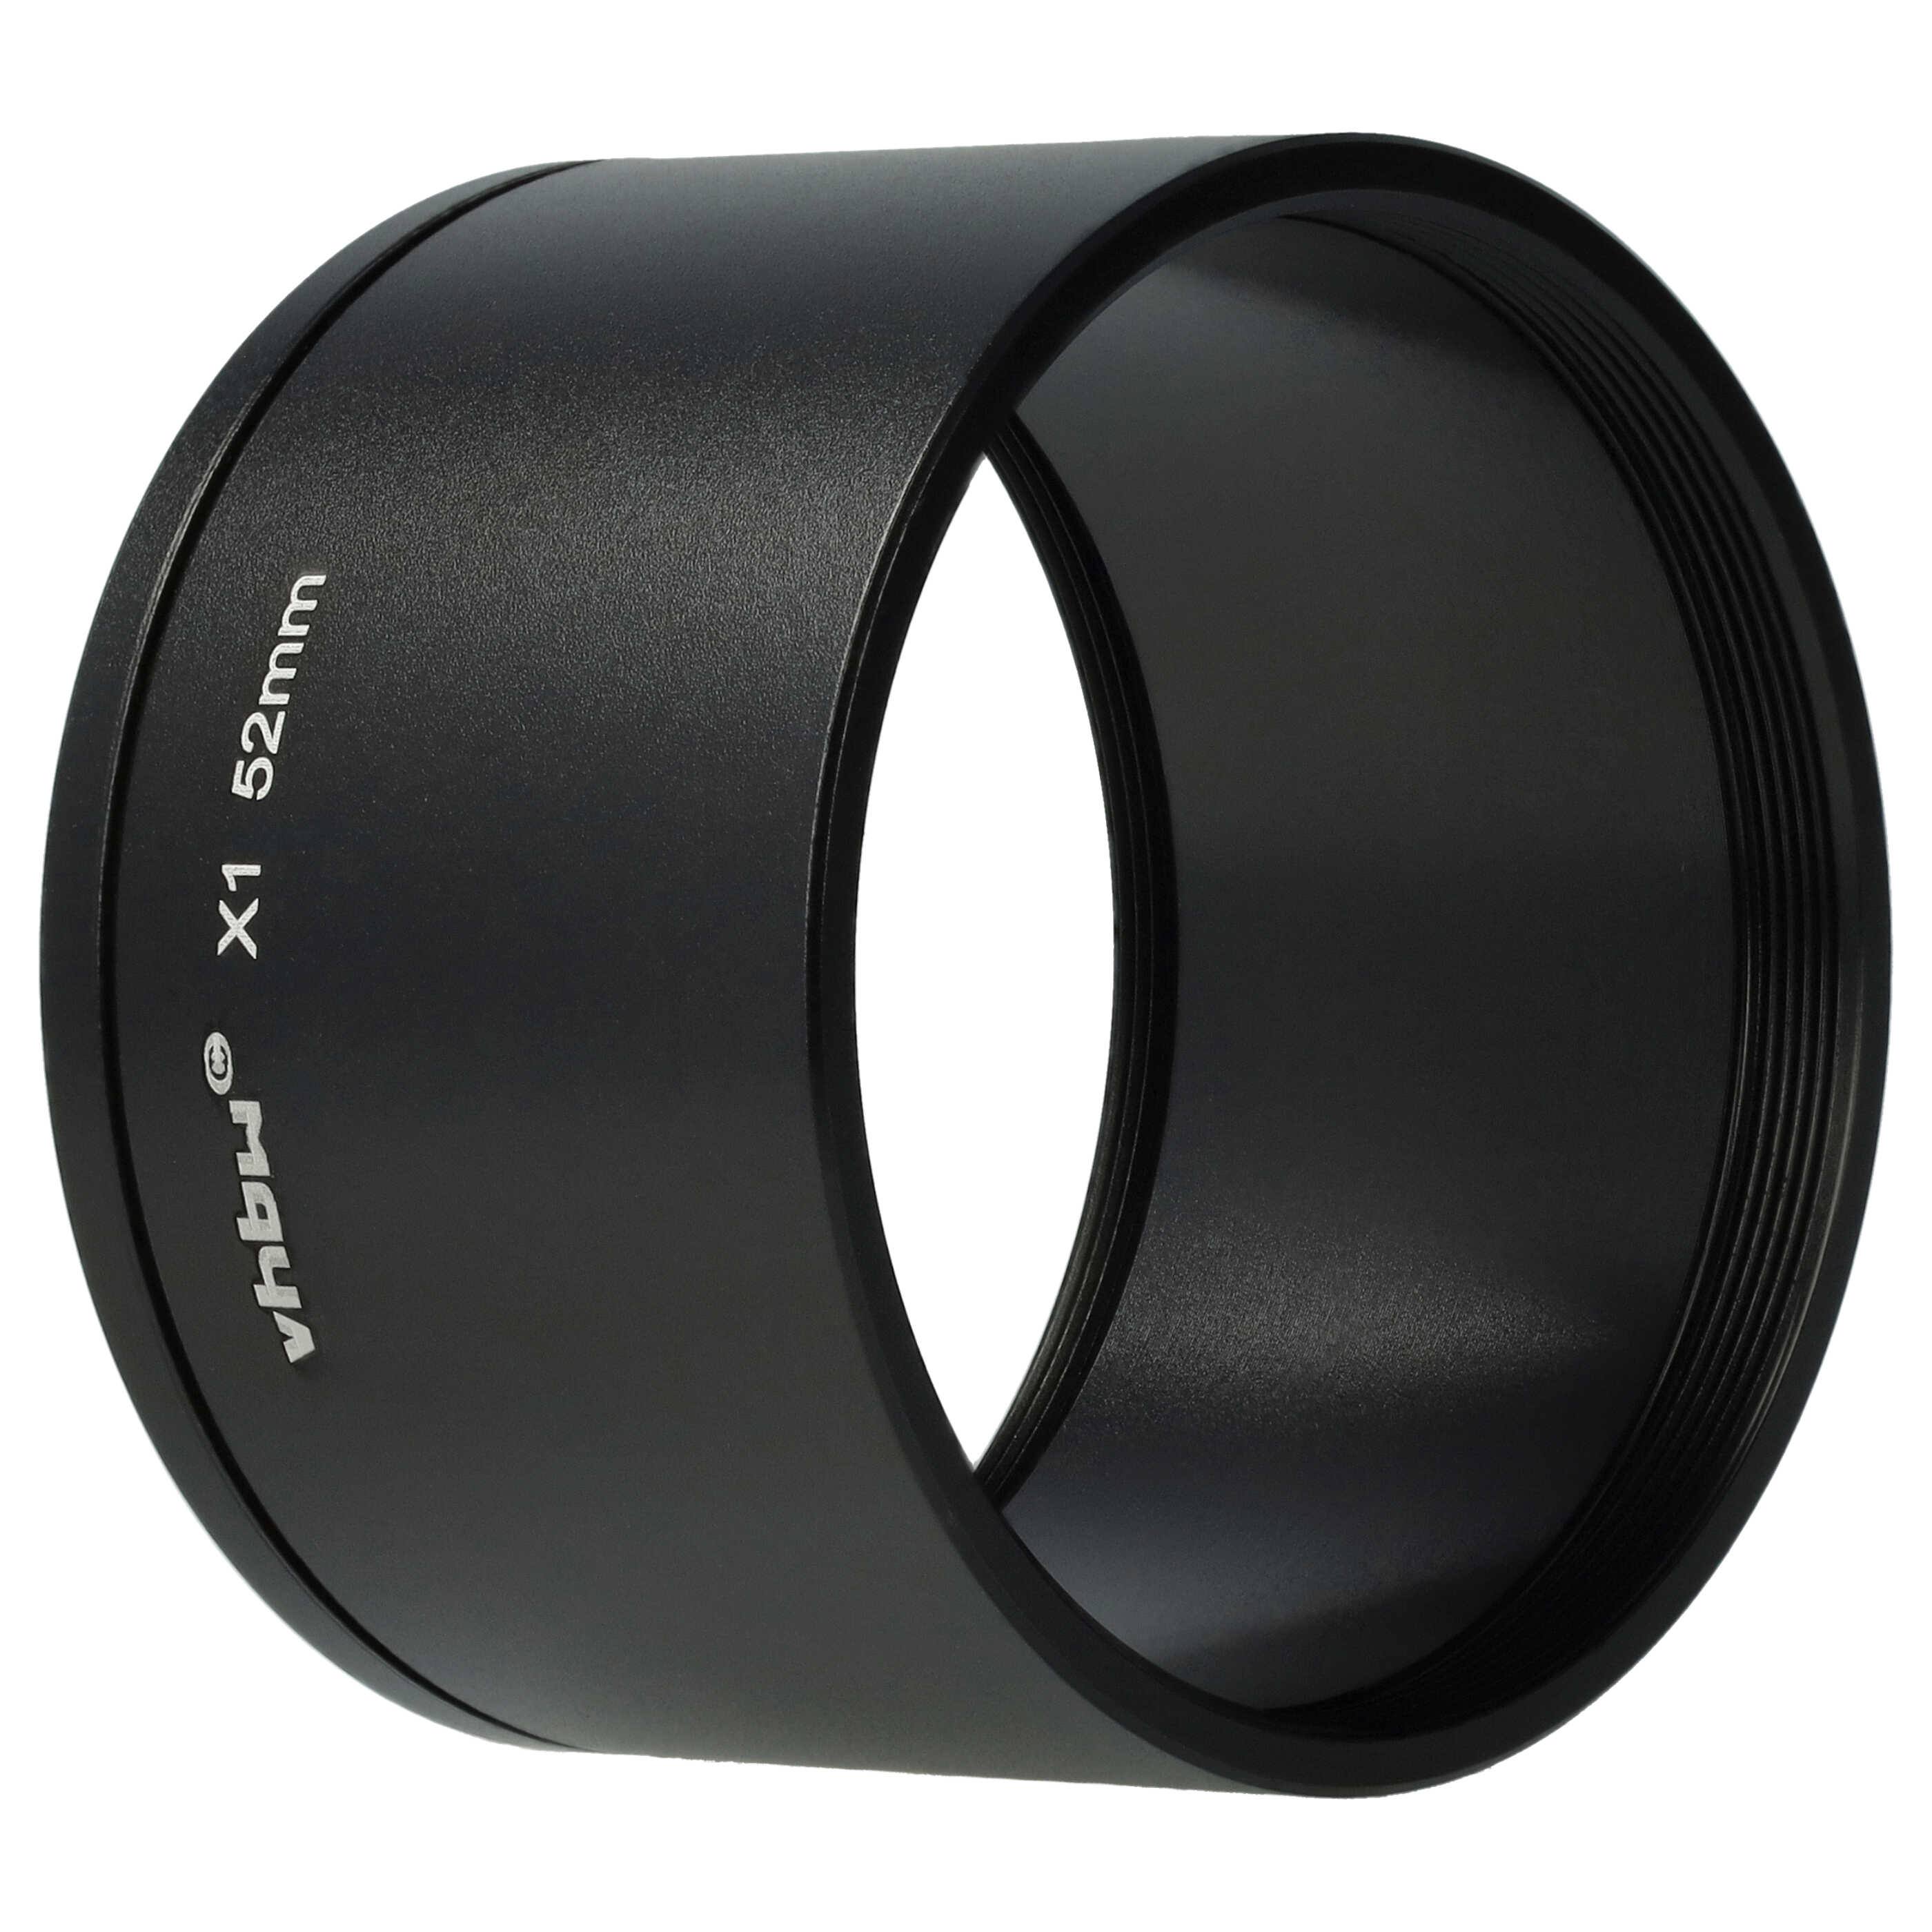 Redukcja filtrowa 52 mm do obiektywu aparatu Leica X1, X2 